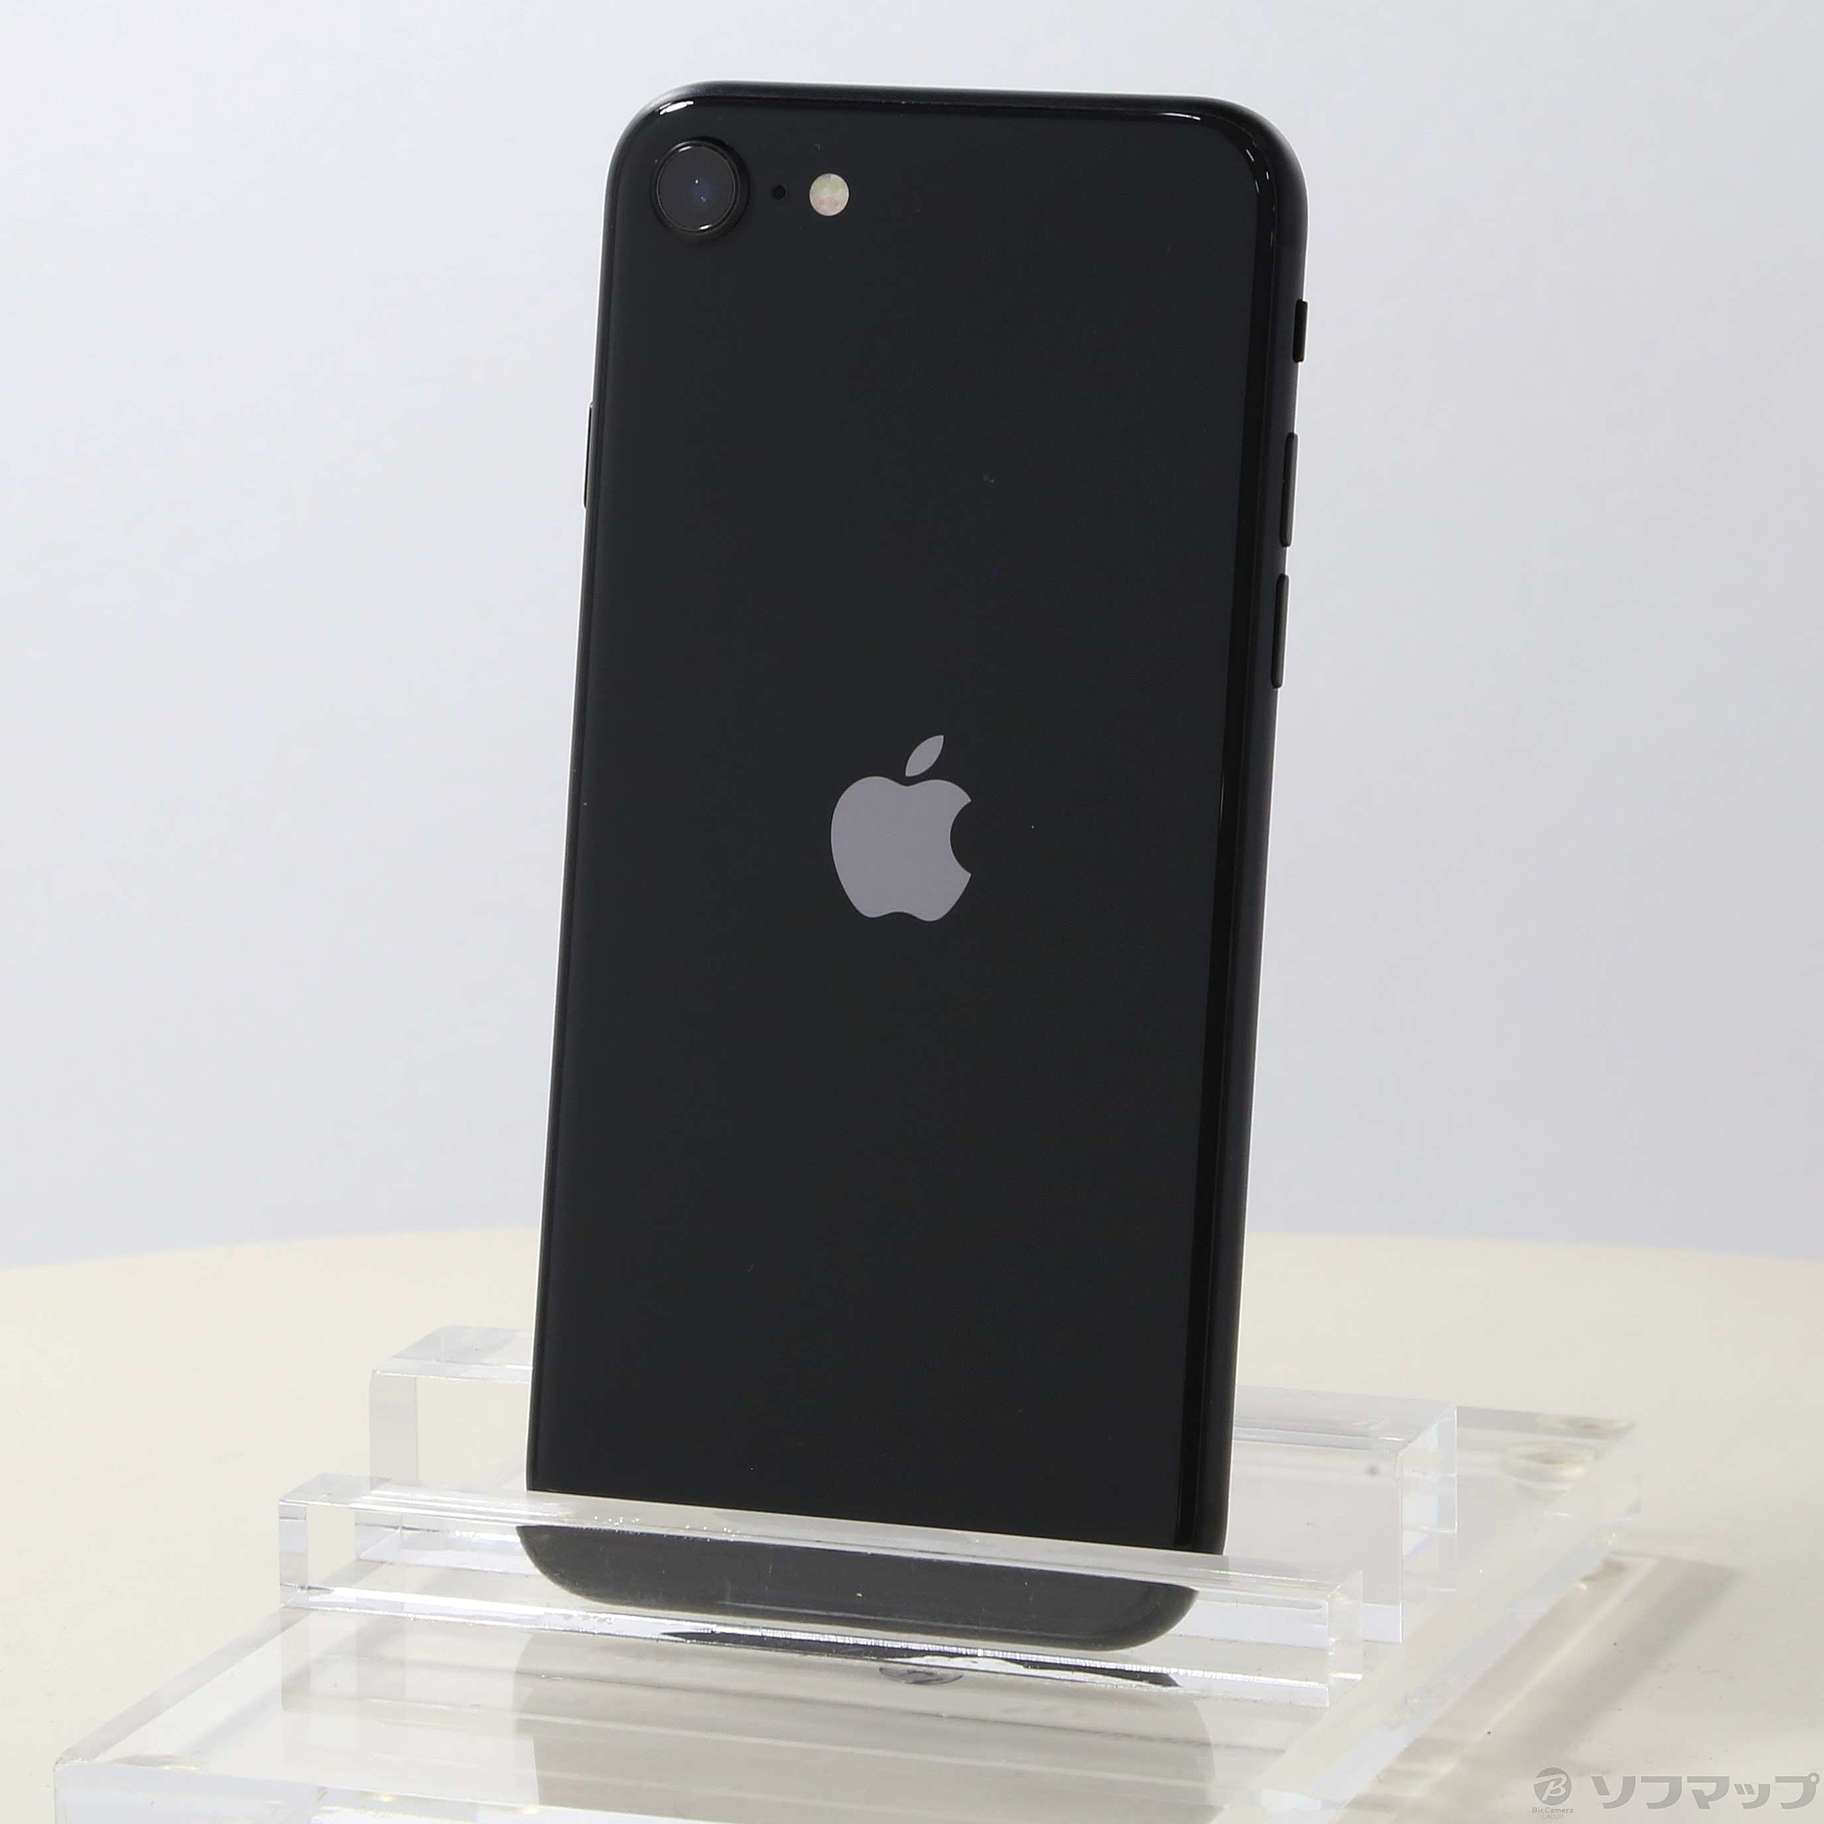 iPhone SE 第2世代 128GB 黒 Apple アップル SIMフリー-